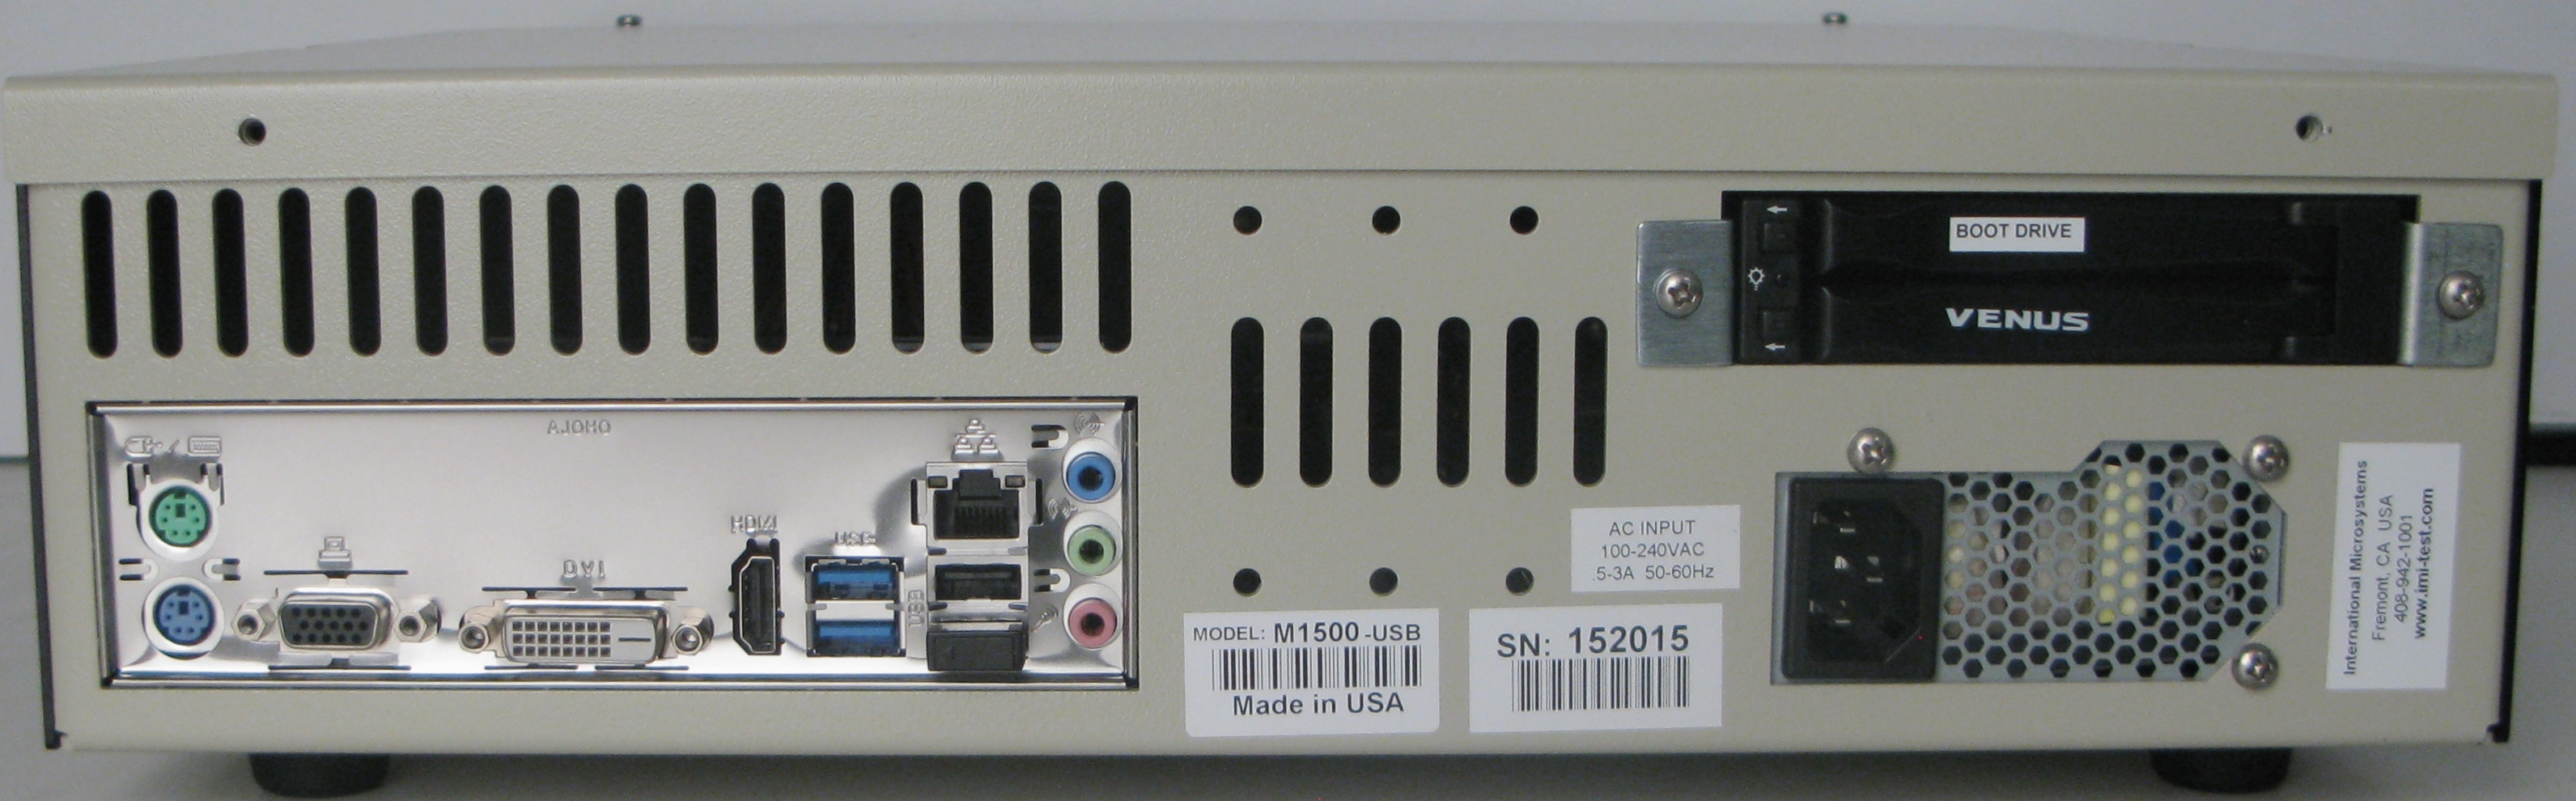 M1500-USB-BACK_R1